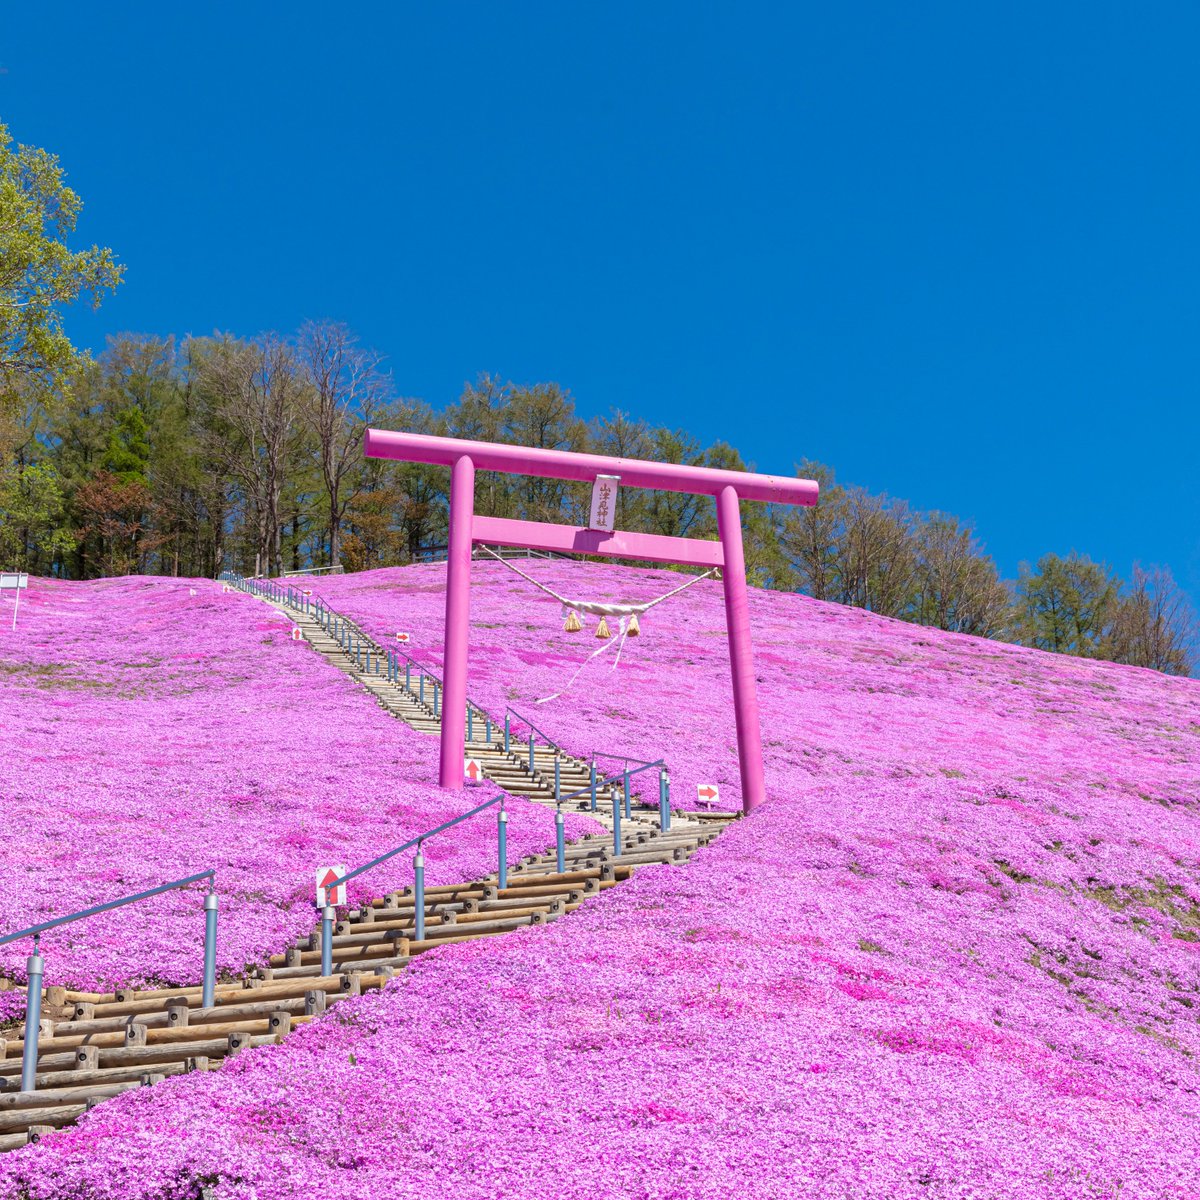 #みどりの日 に芝桜の名所をご紹介！

大空町【ひがしもこと芝桜公園】
花の見頃：5月上旬～5月下旬

山津見神社のピンクの鳥居も要チェック✨
GWのお出かけで立ち寄ってみてはいかがでしょうか？